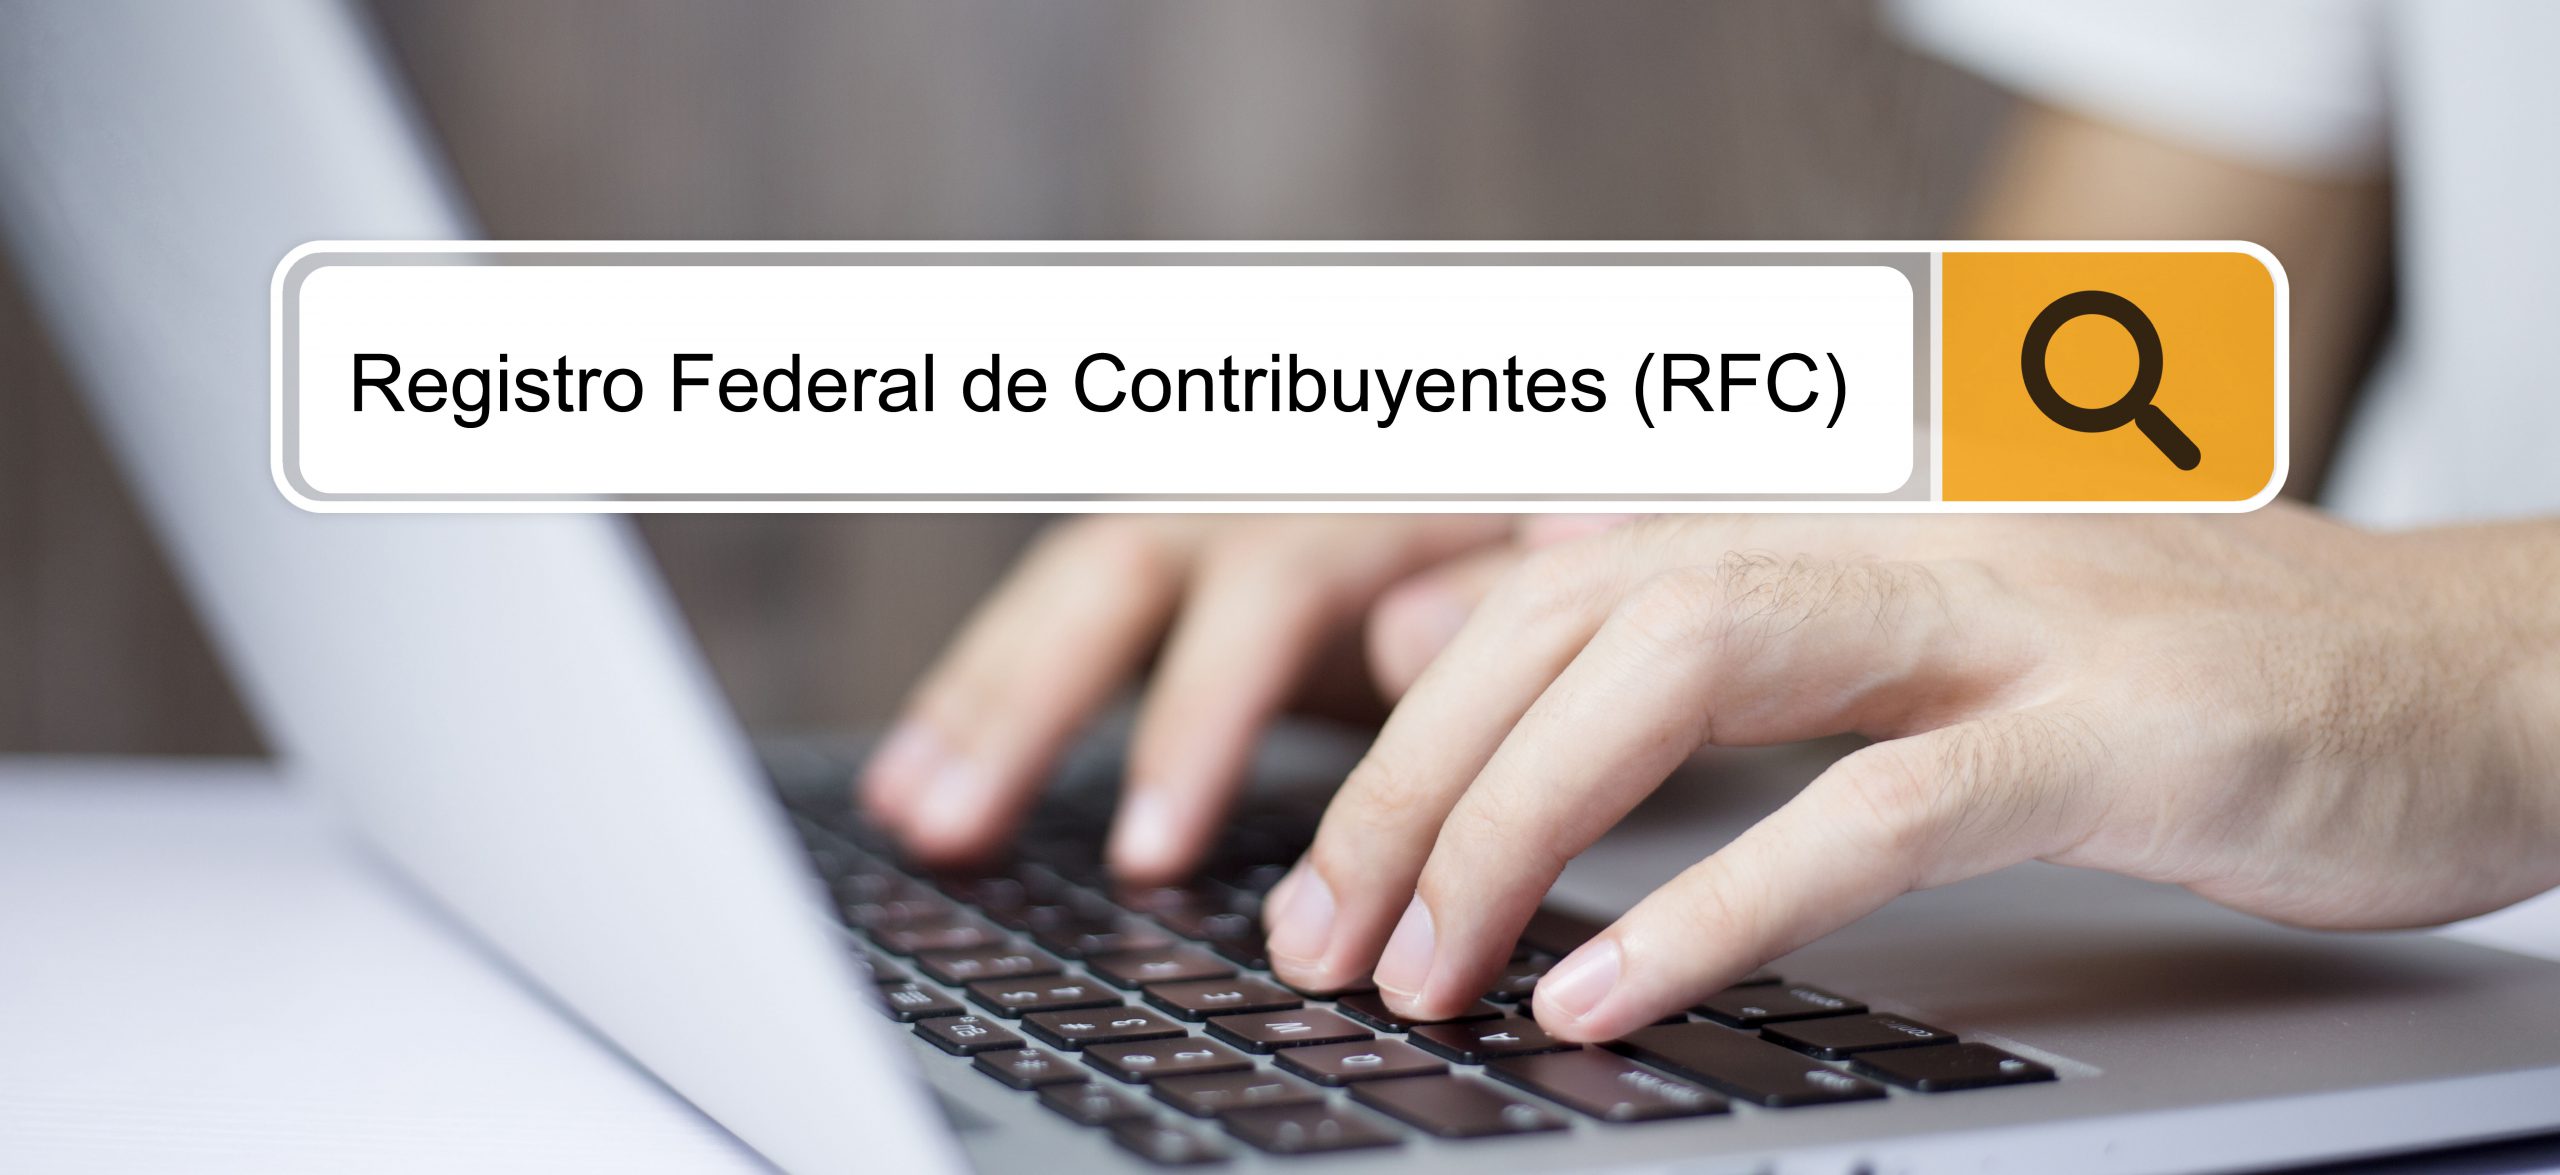 Para invertir en diversas instituciones del sistema financiero mexicano, uno de los requisitos es contar con tu RFC, aquí lo que debes saber.